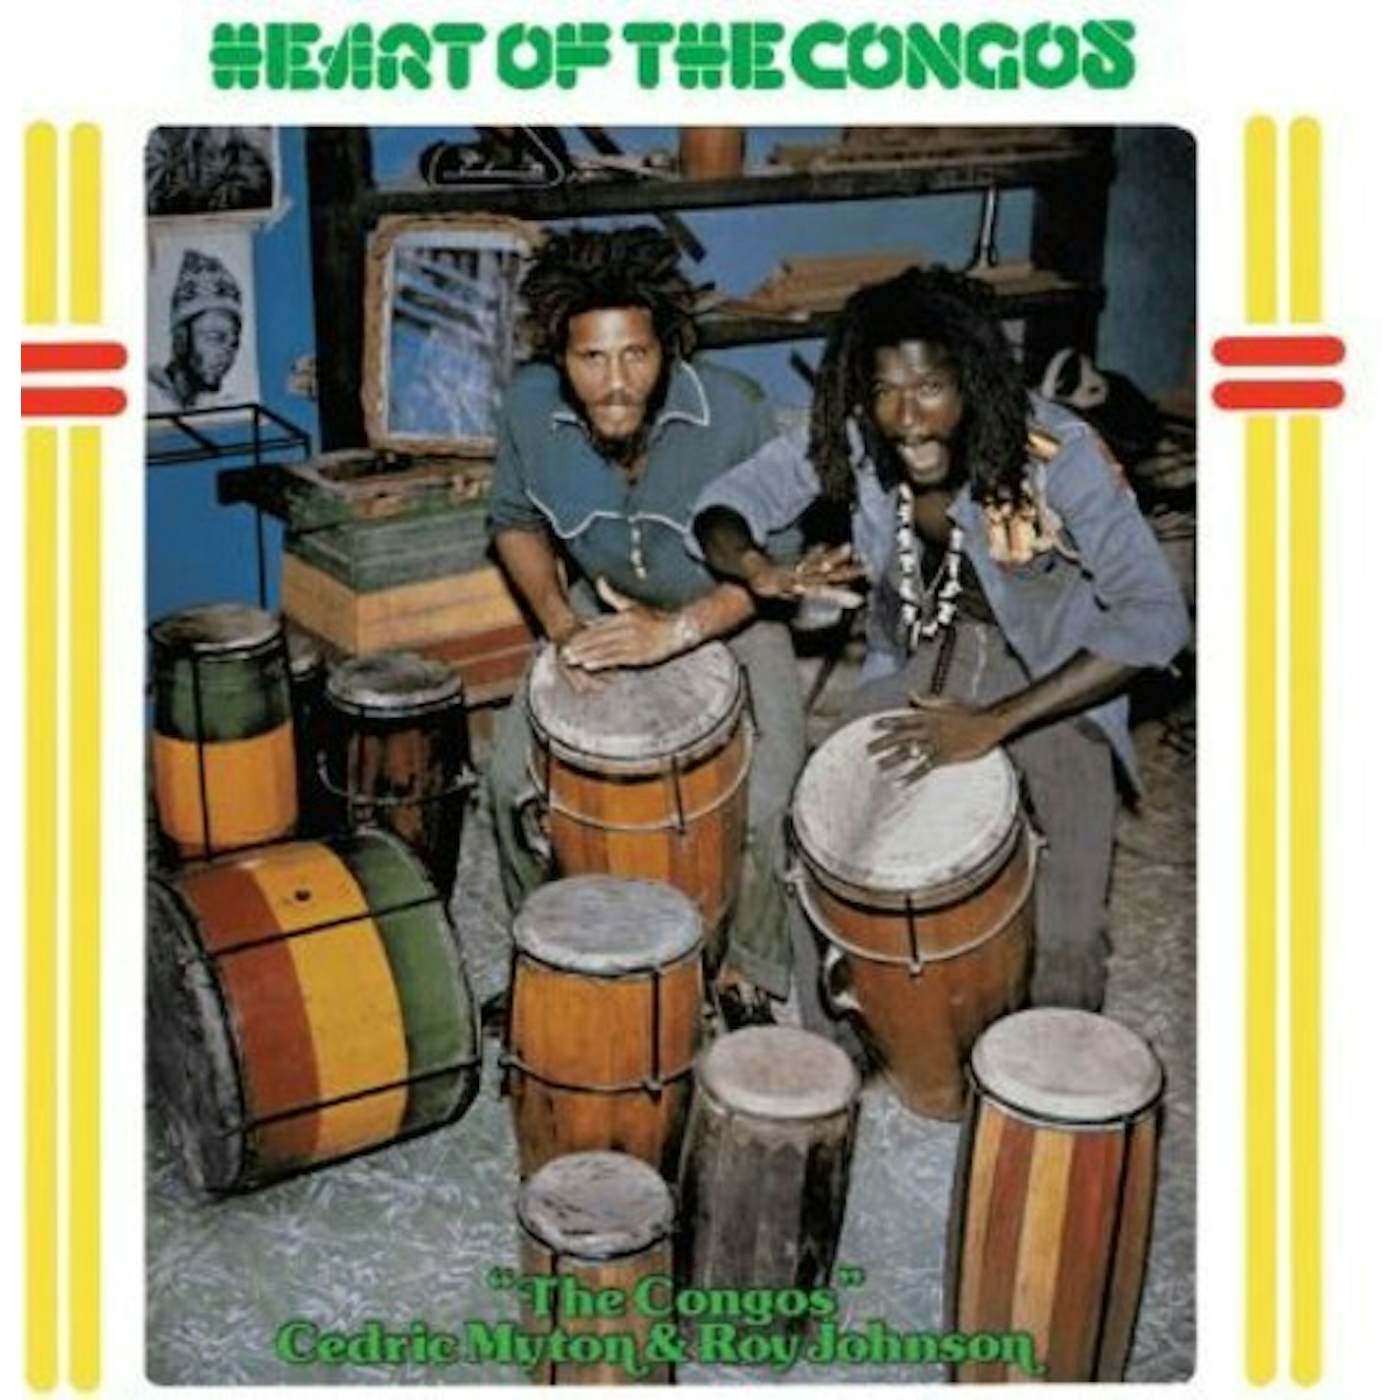 HEART OF THE CONGOS Vinyl Record